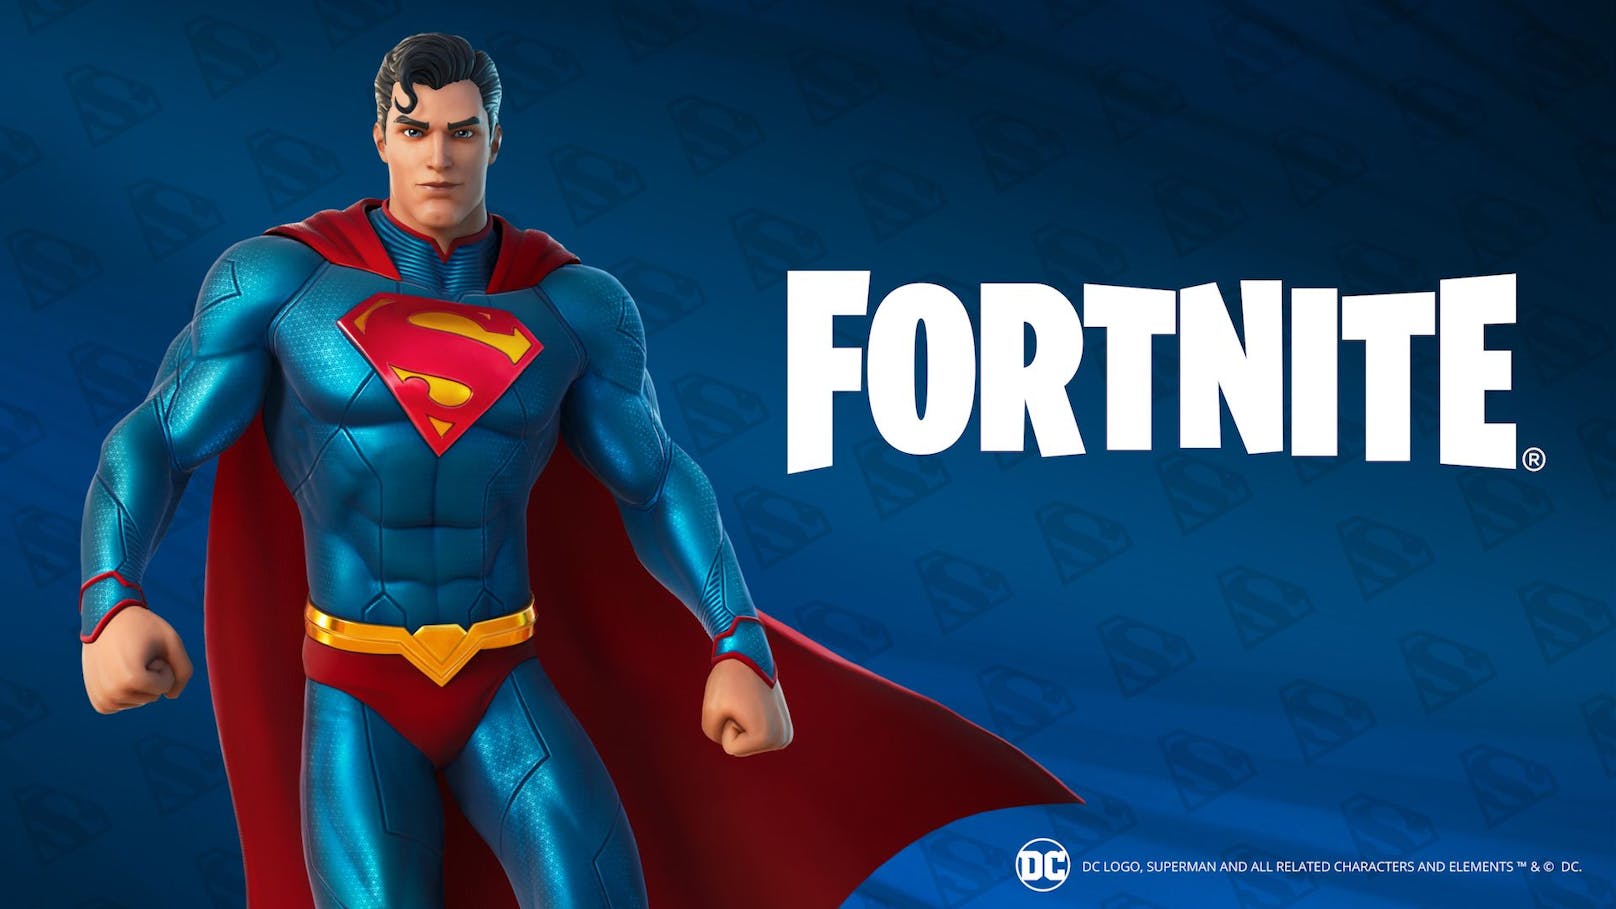 DCs Superman landet in "Fortnite" mit Superman-Outfits und besonderen Aufträgen.